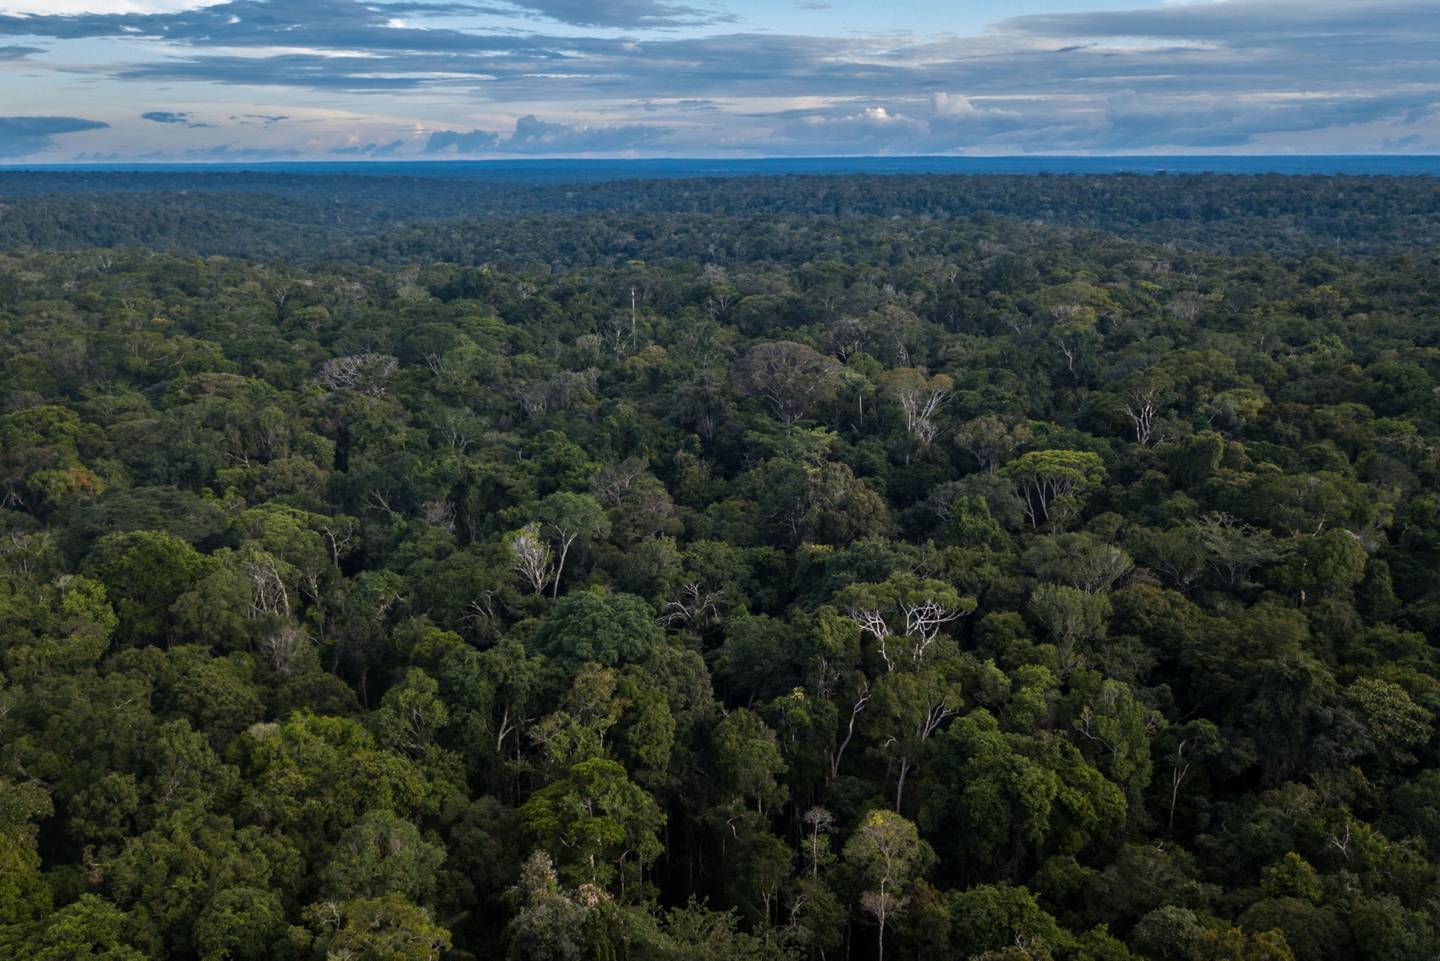 La selva amazónica se alza en esta fotografía aérea tomada cerca de Presidente Figueiredo, estado de Amazonas, Brasil, el domingo 3 de febrero de 2019.